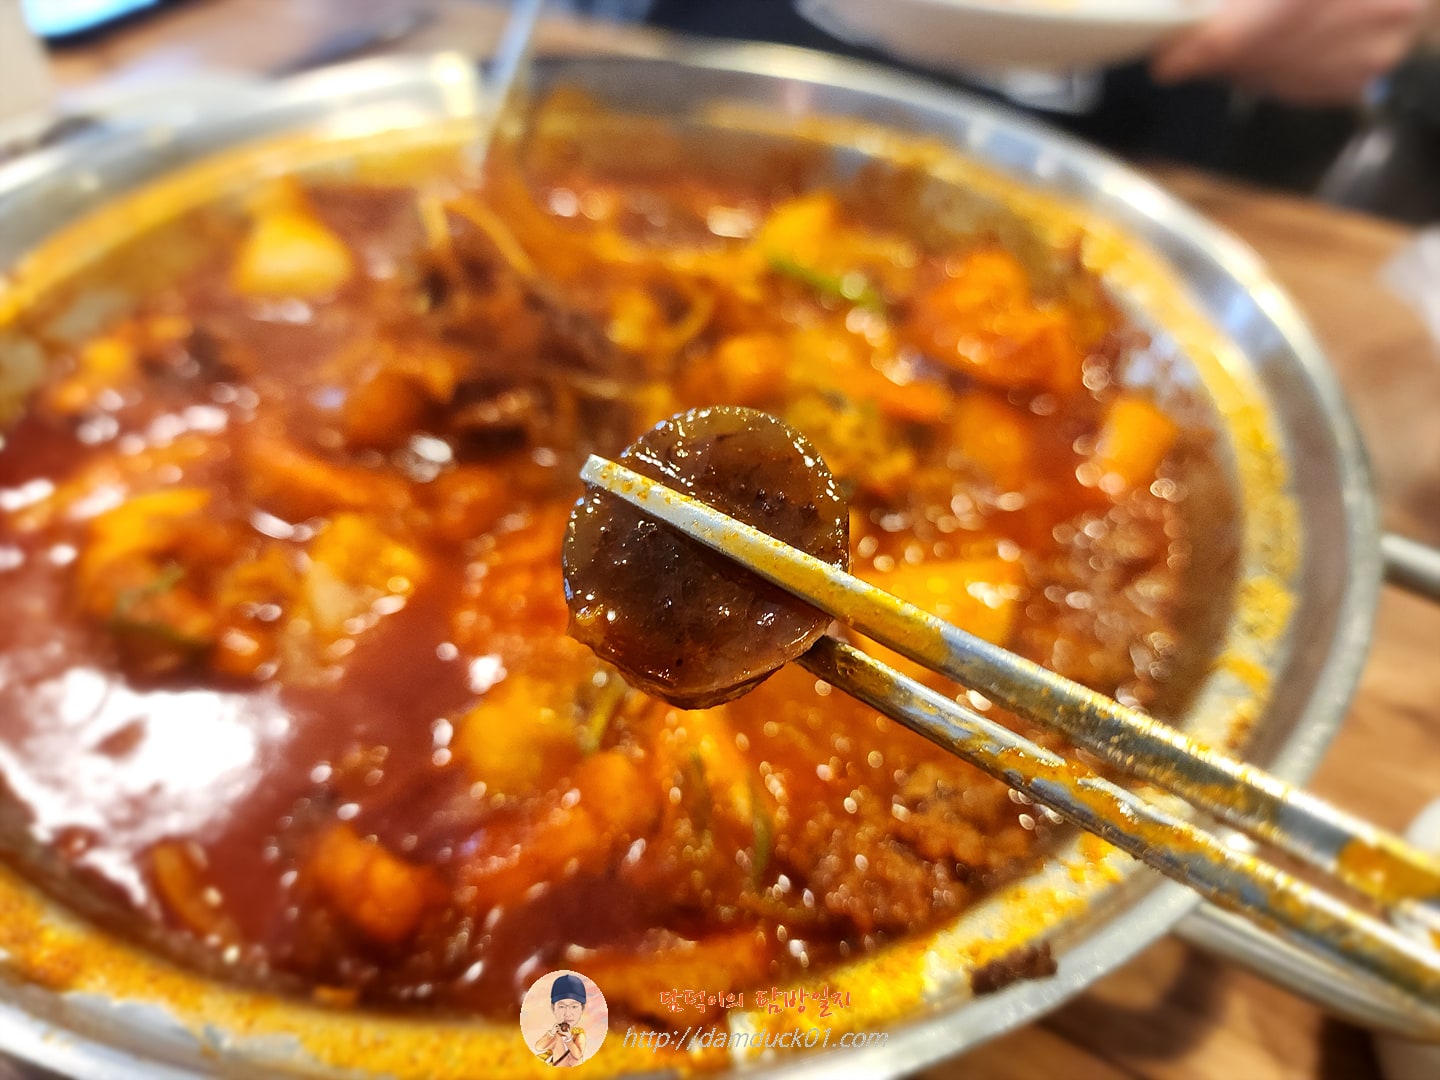 통큰오짱떡볶이 + 차돌토핑 + 찰순대 + 다모아튀김